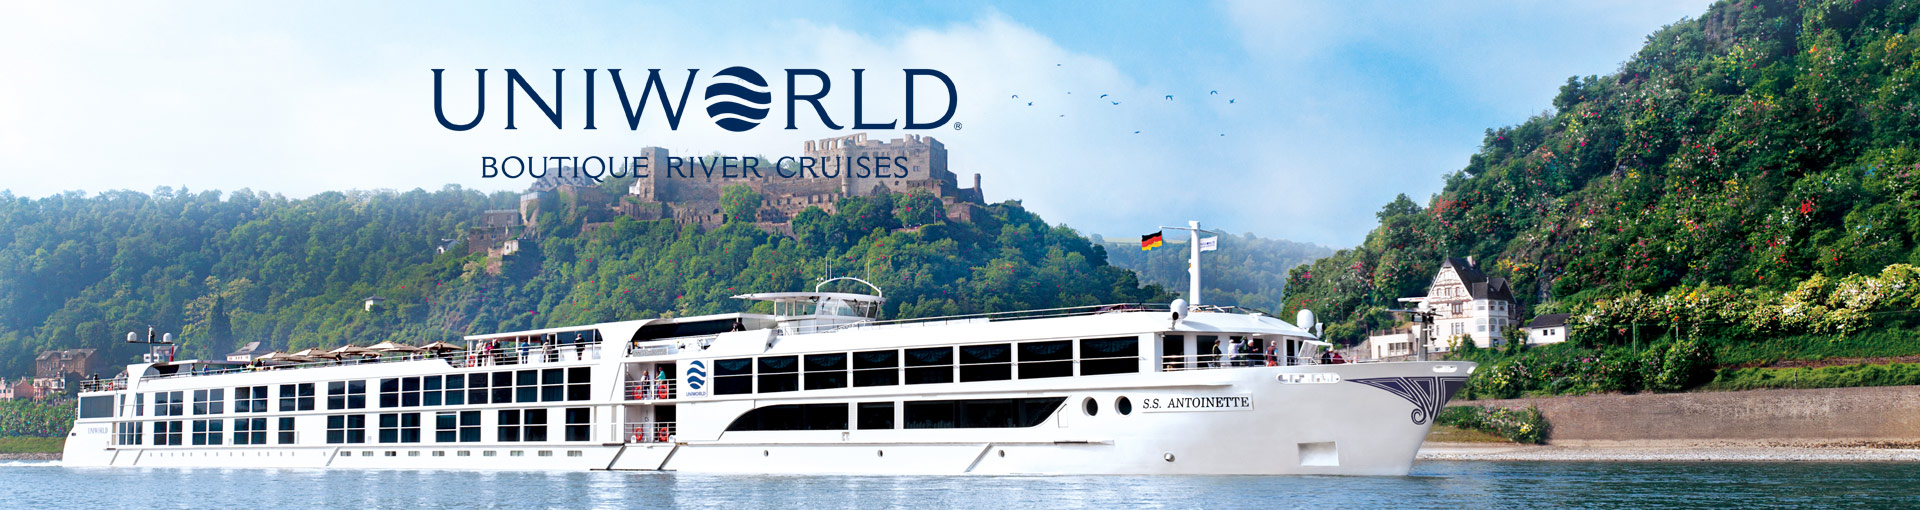 uniworld river cruises facebook